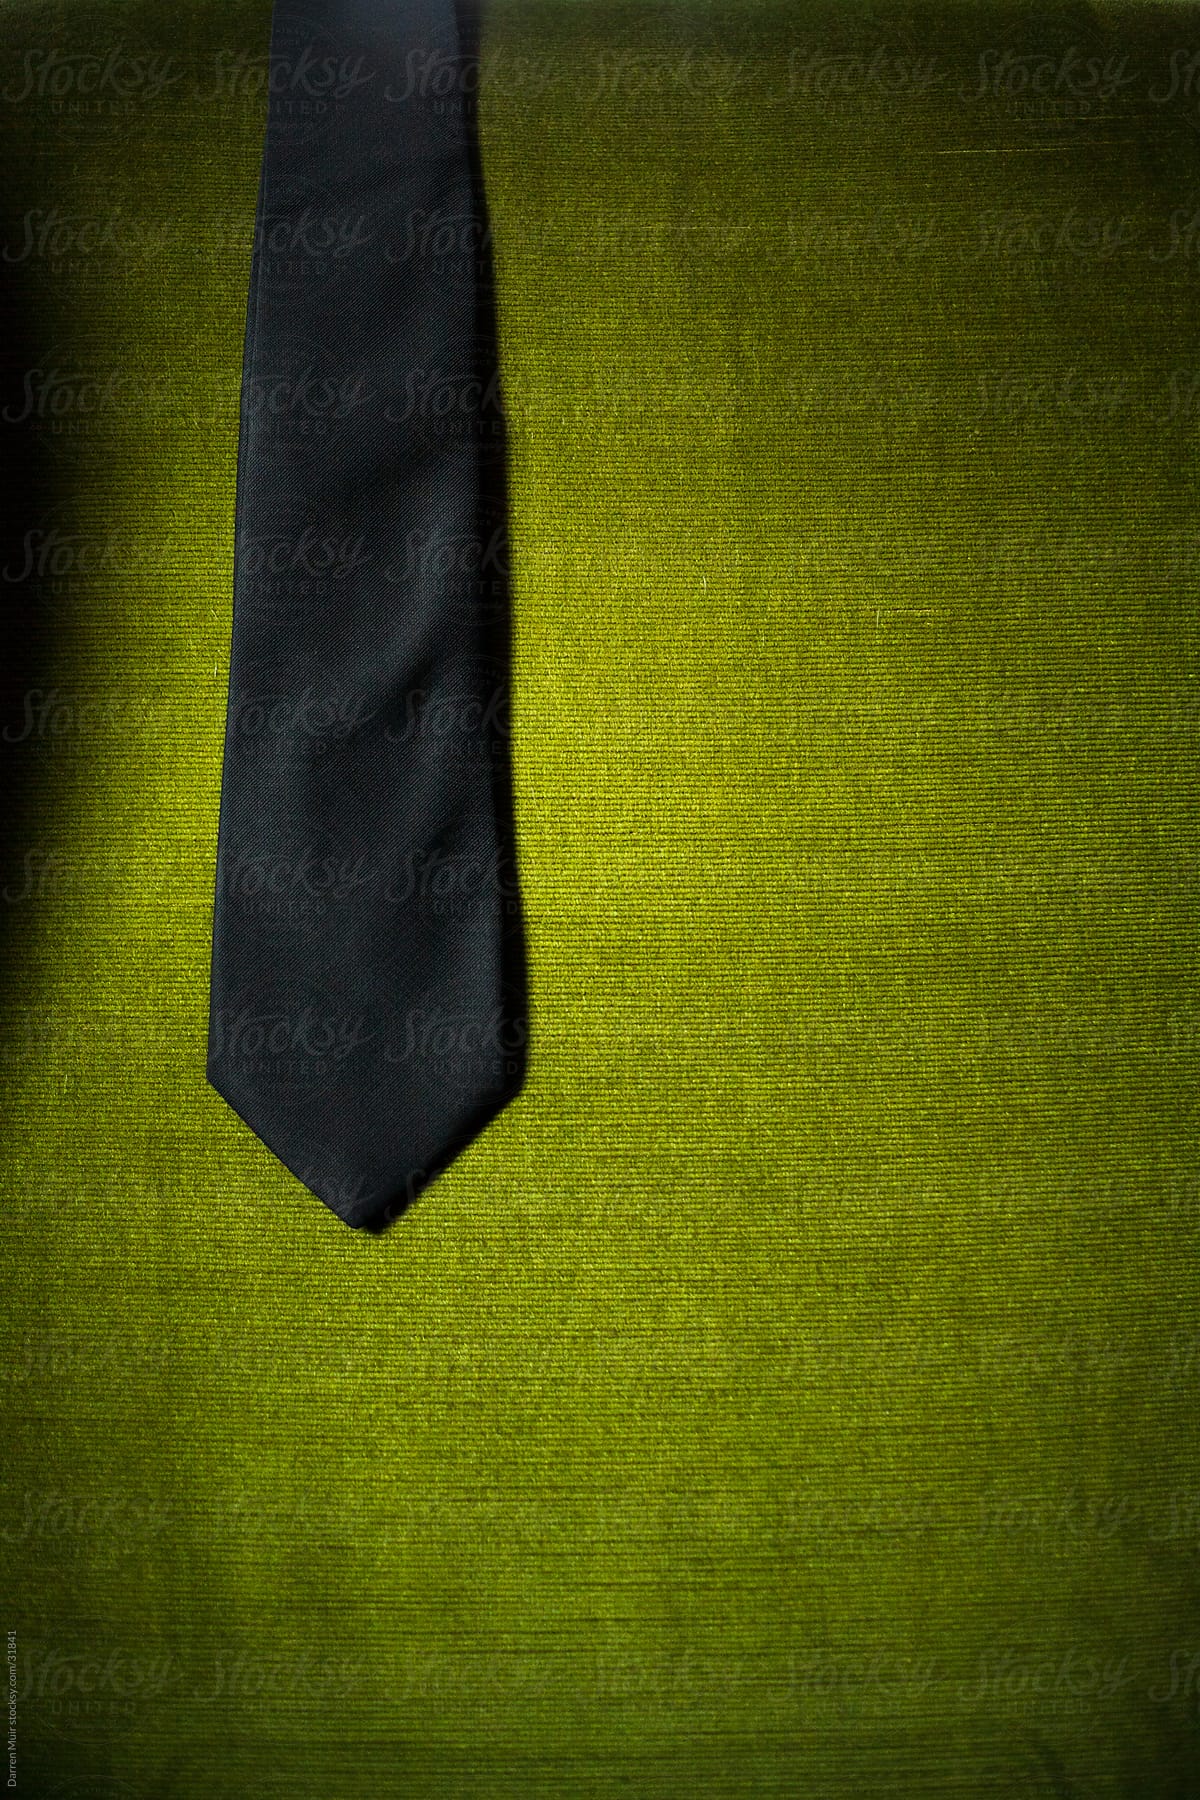 Black tie draped over a green velvet chair.